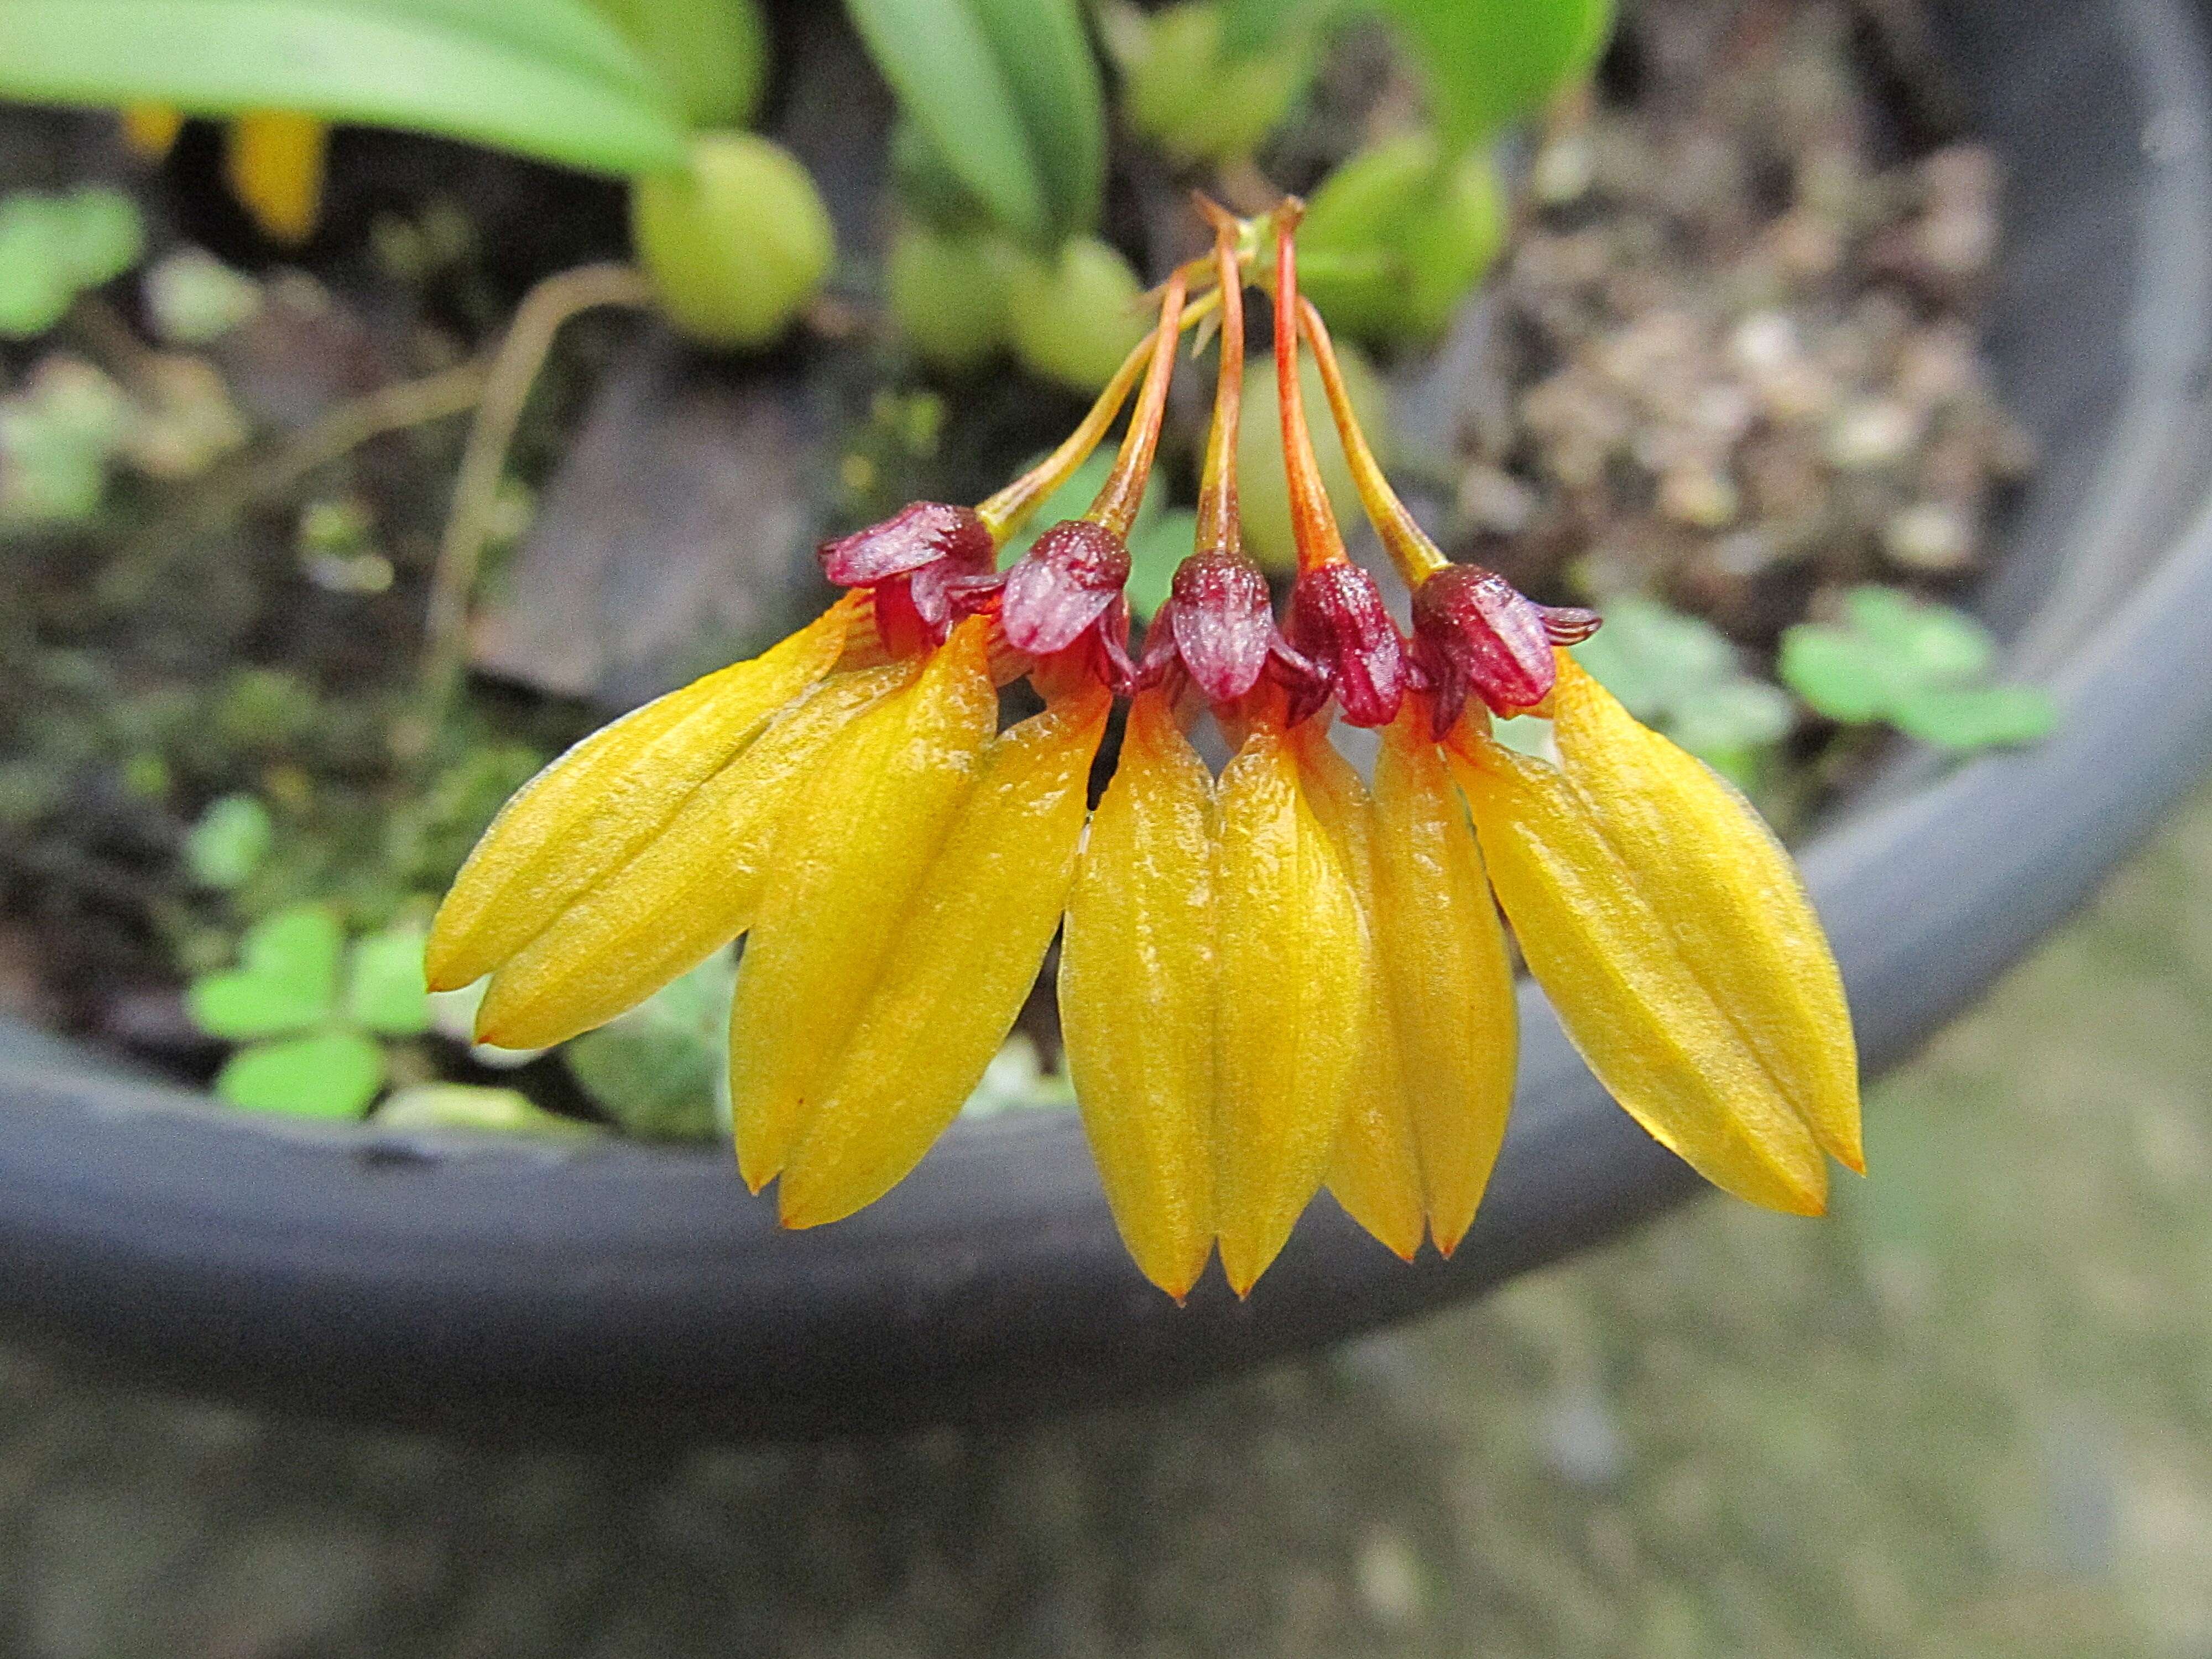 Image of Bulbophyllum retusiusculum Rchb. fil.